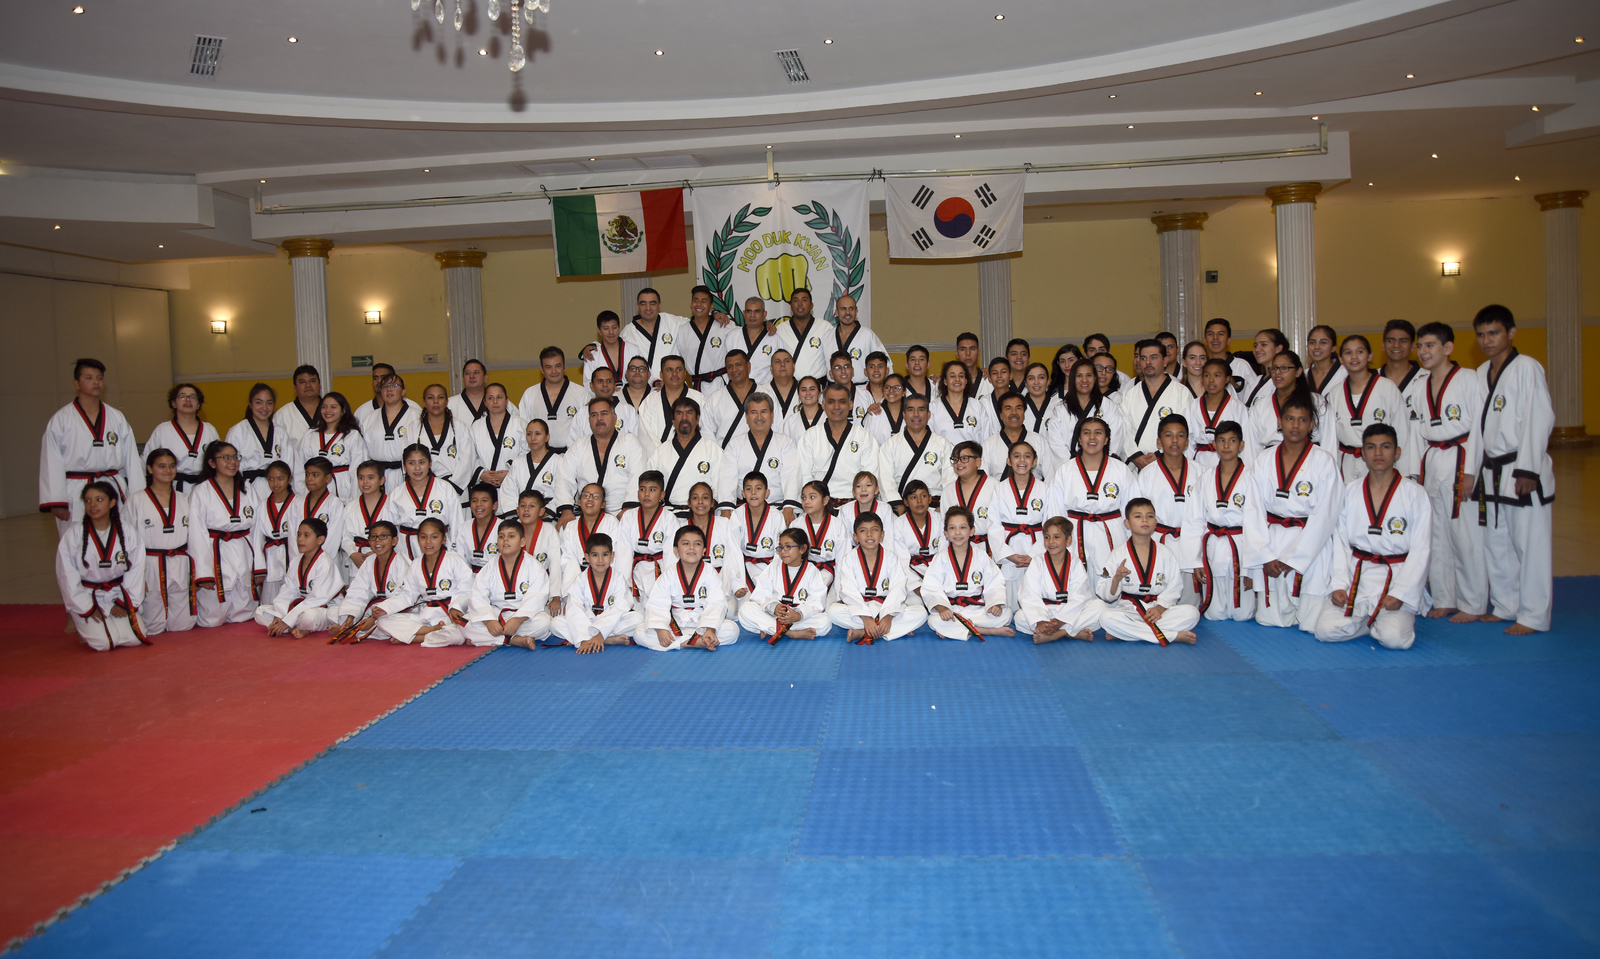 Una jornada de gala, con examinadores foráneos, se vivió durante esta ceremonia de promoción de grados en tae kwon do.